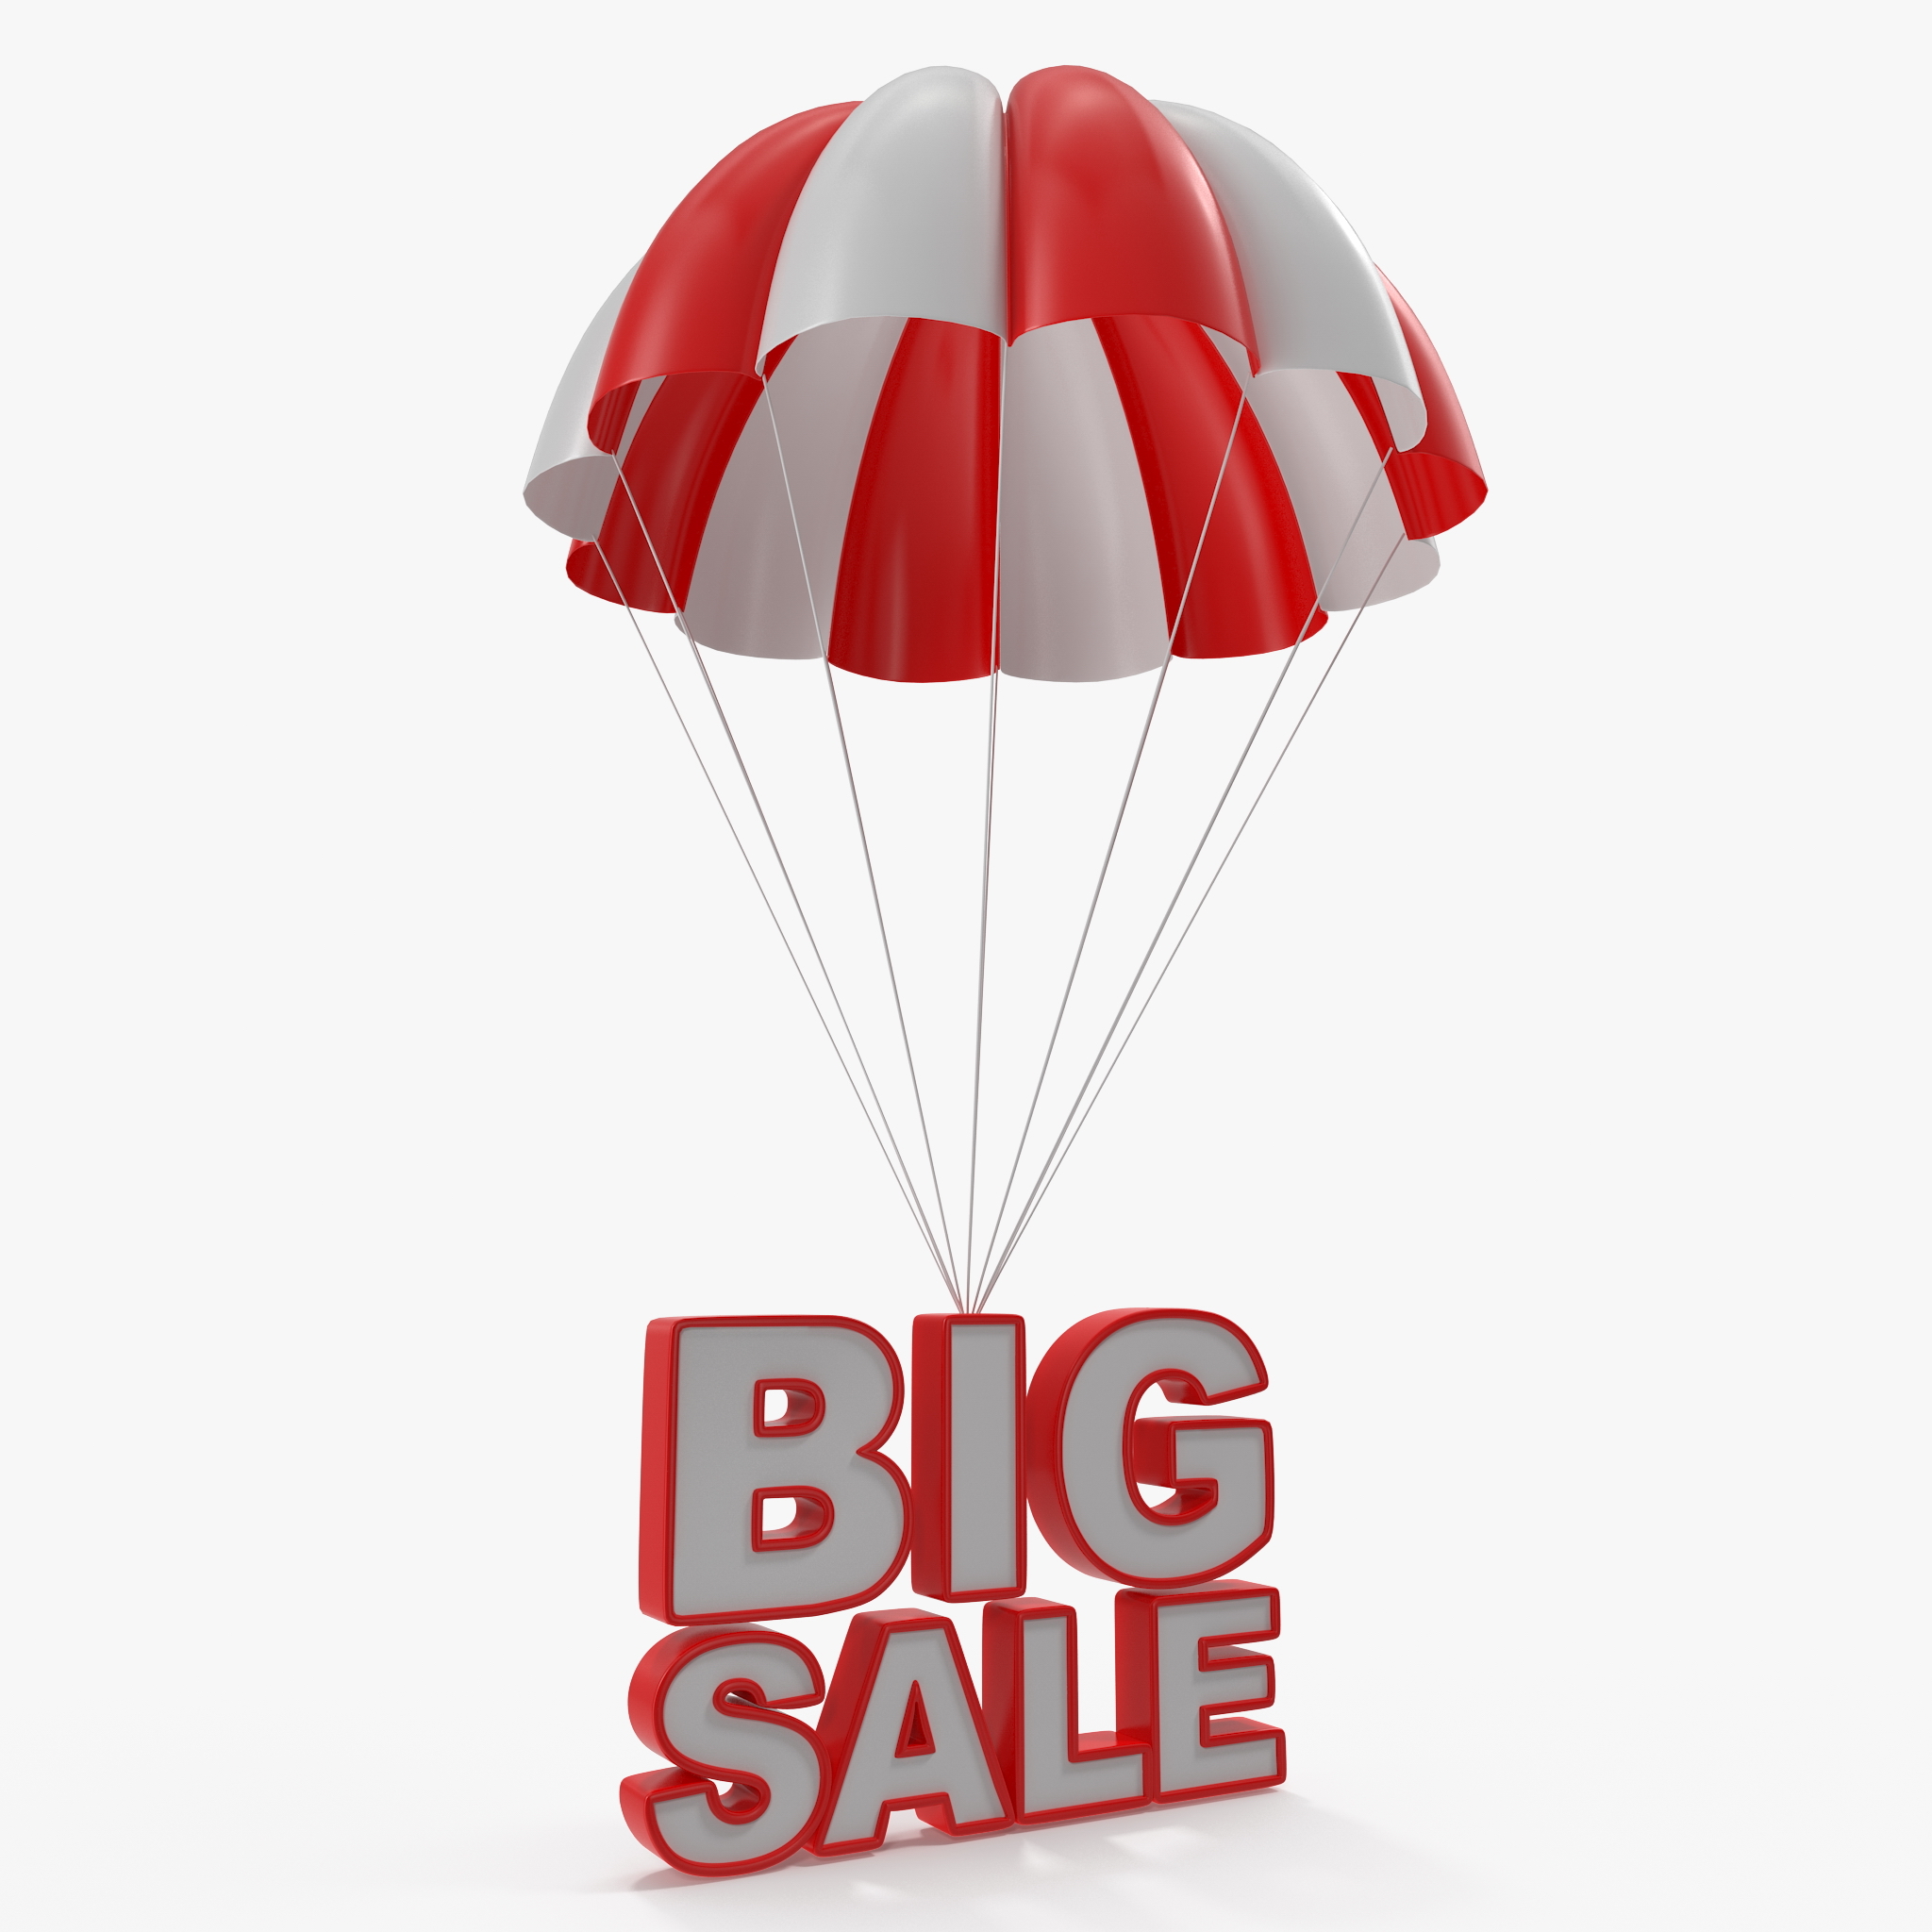 Parachute discount sign 3D - TurboSquid 1218901